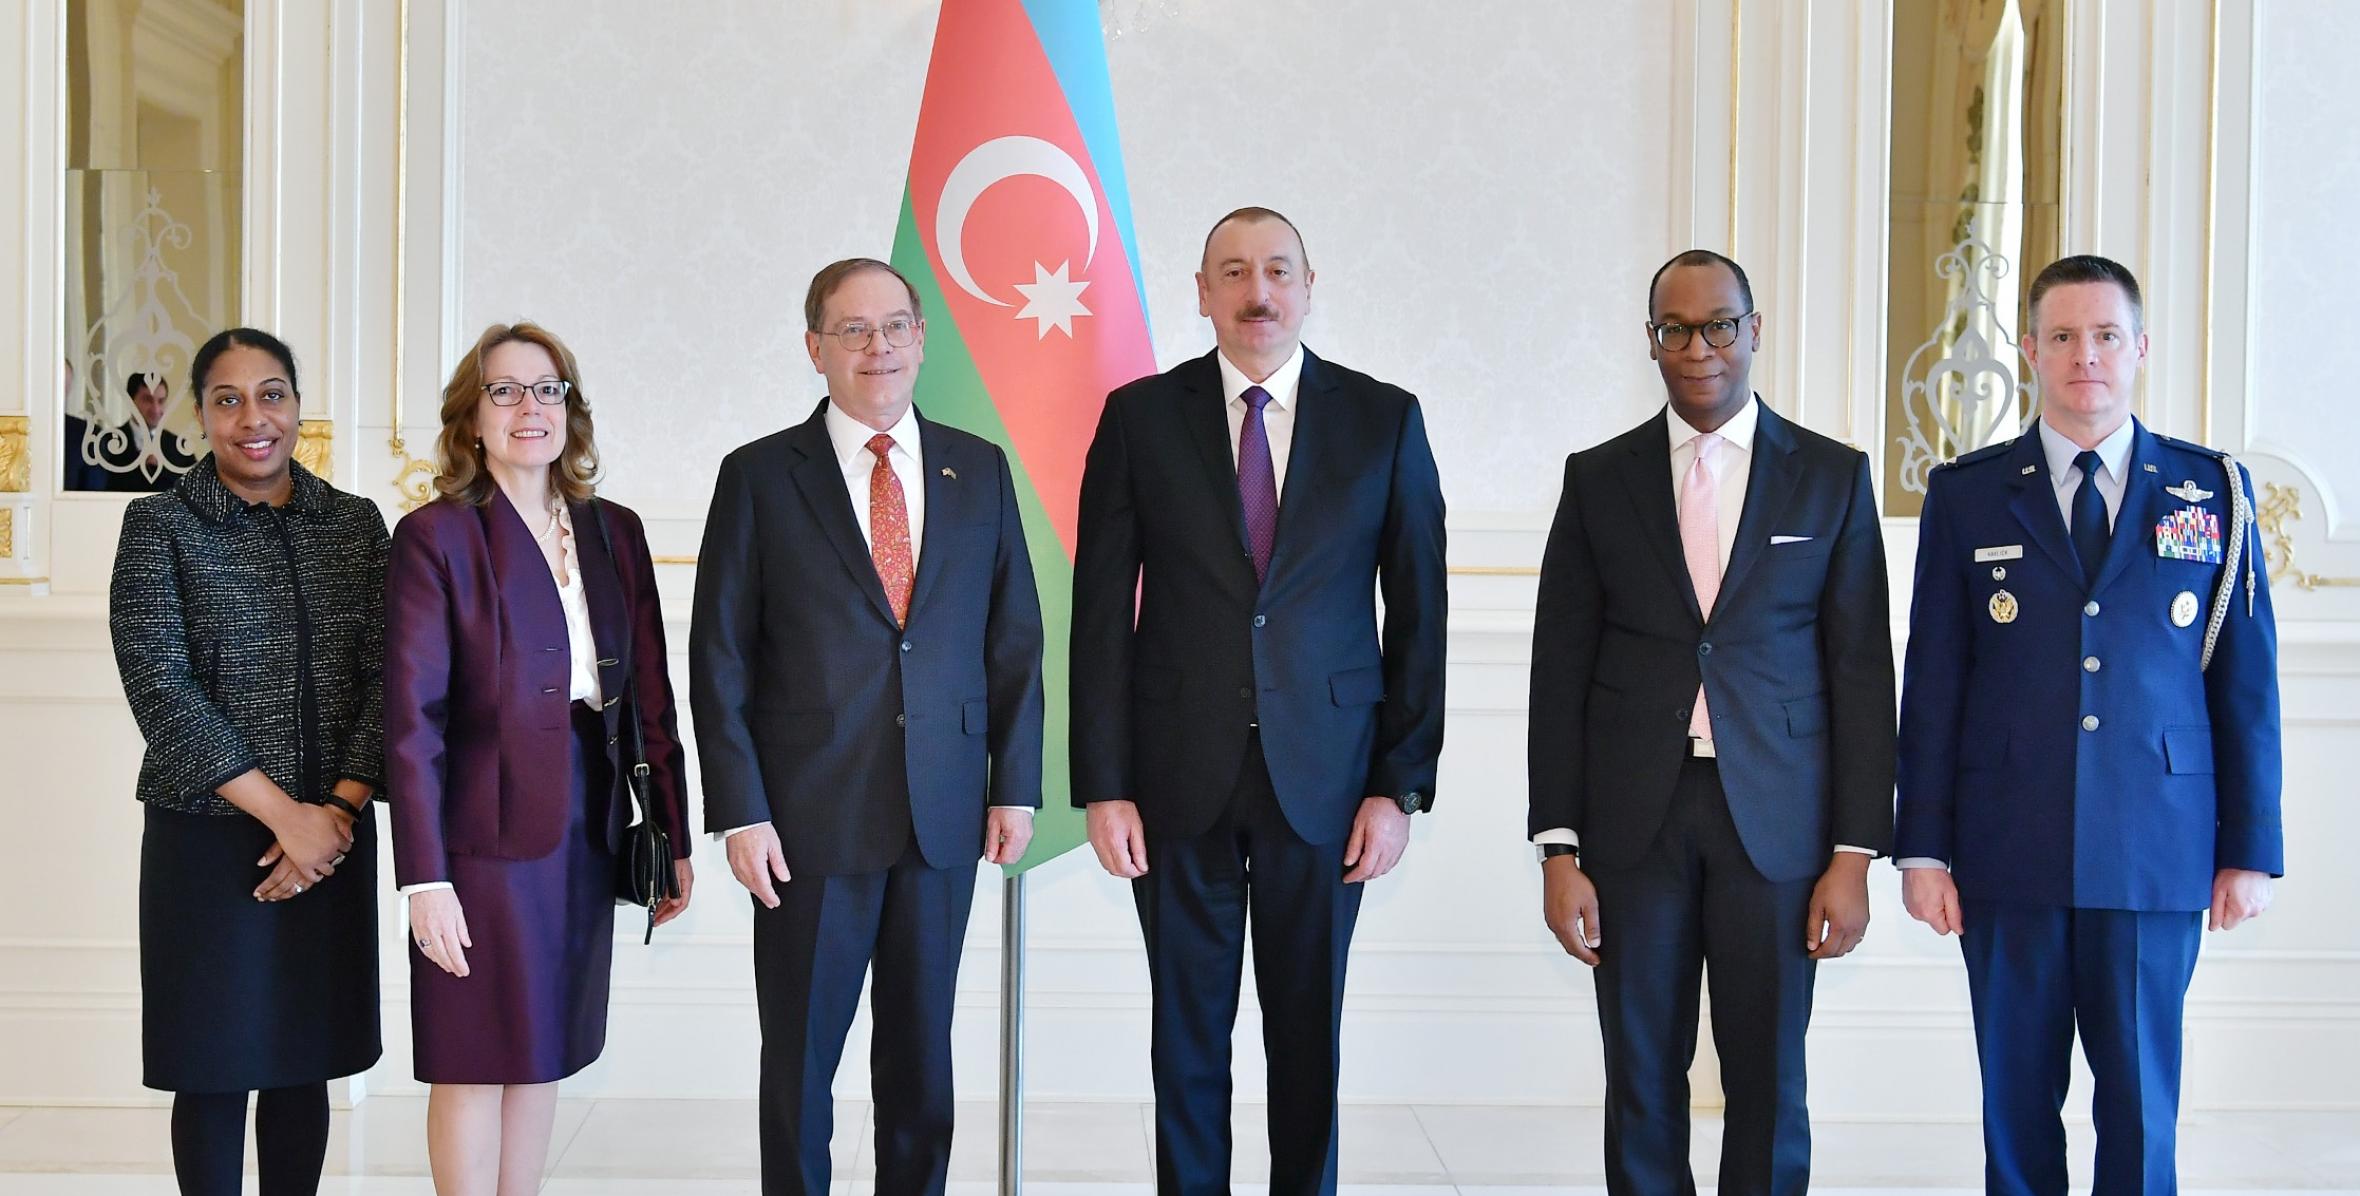 Ильхам Алиев принял верительные грамоты новоназначенного посла США в Азербайджане